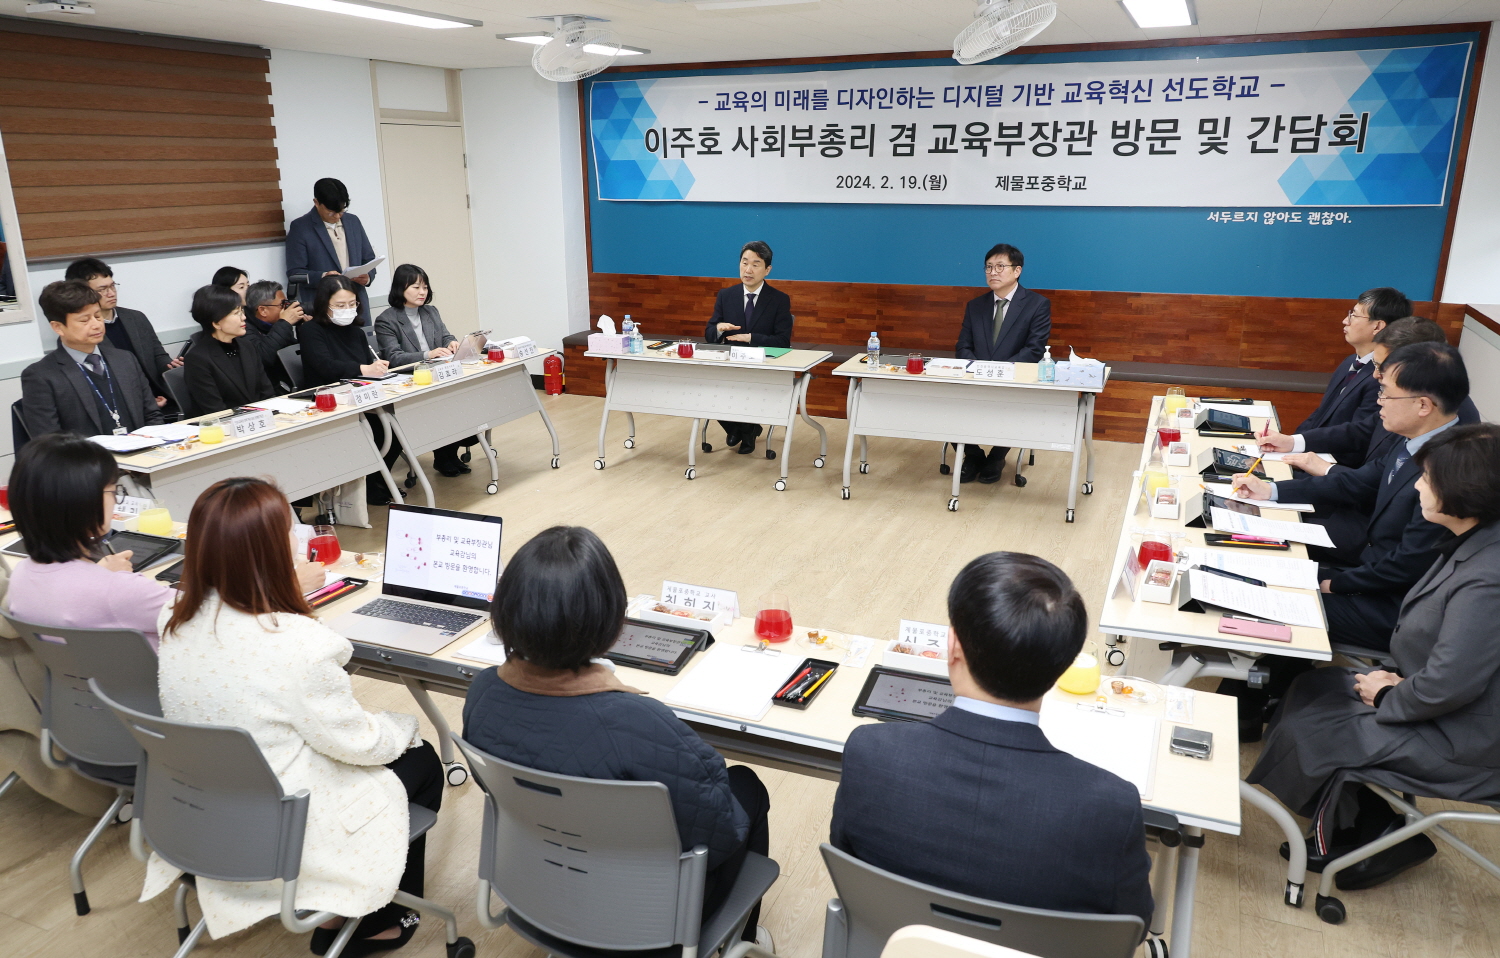 이주호 부총리 겸 교육부장관은 2월 19일(월), 디지털 기반 교육혁신 선도학교인 인천 제물포중학교를 방문해 교원들의 노력을 격려